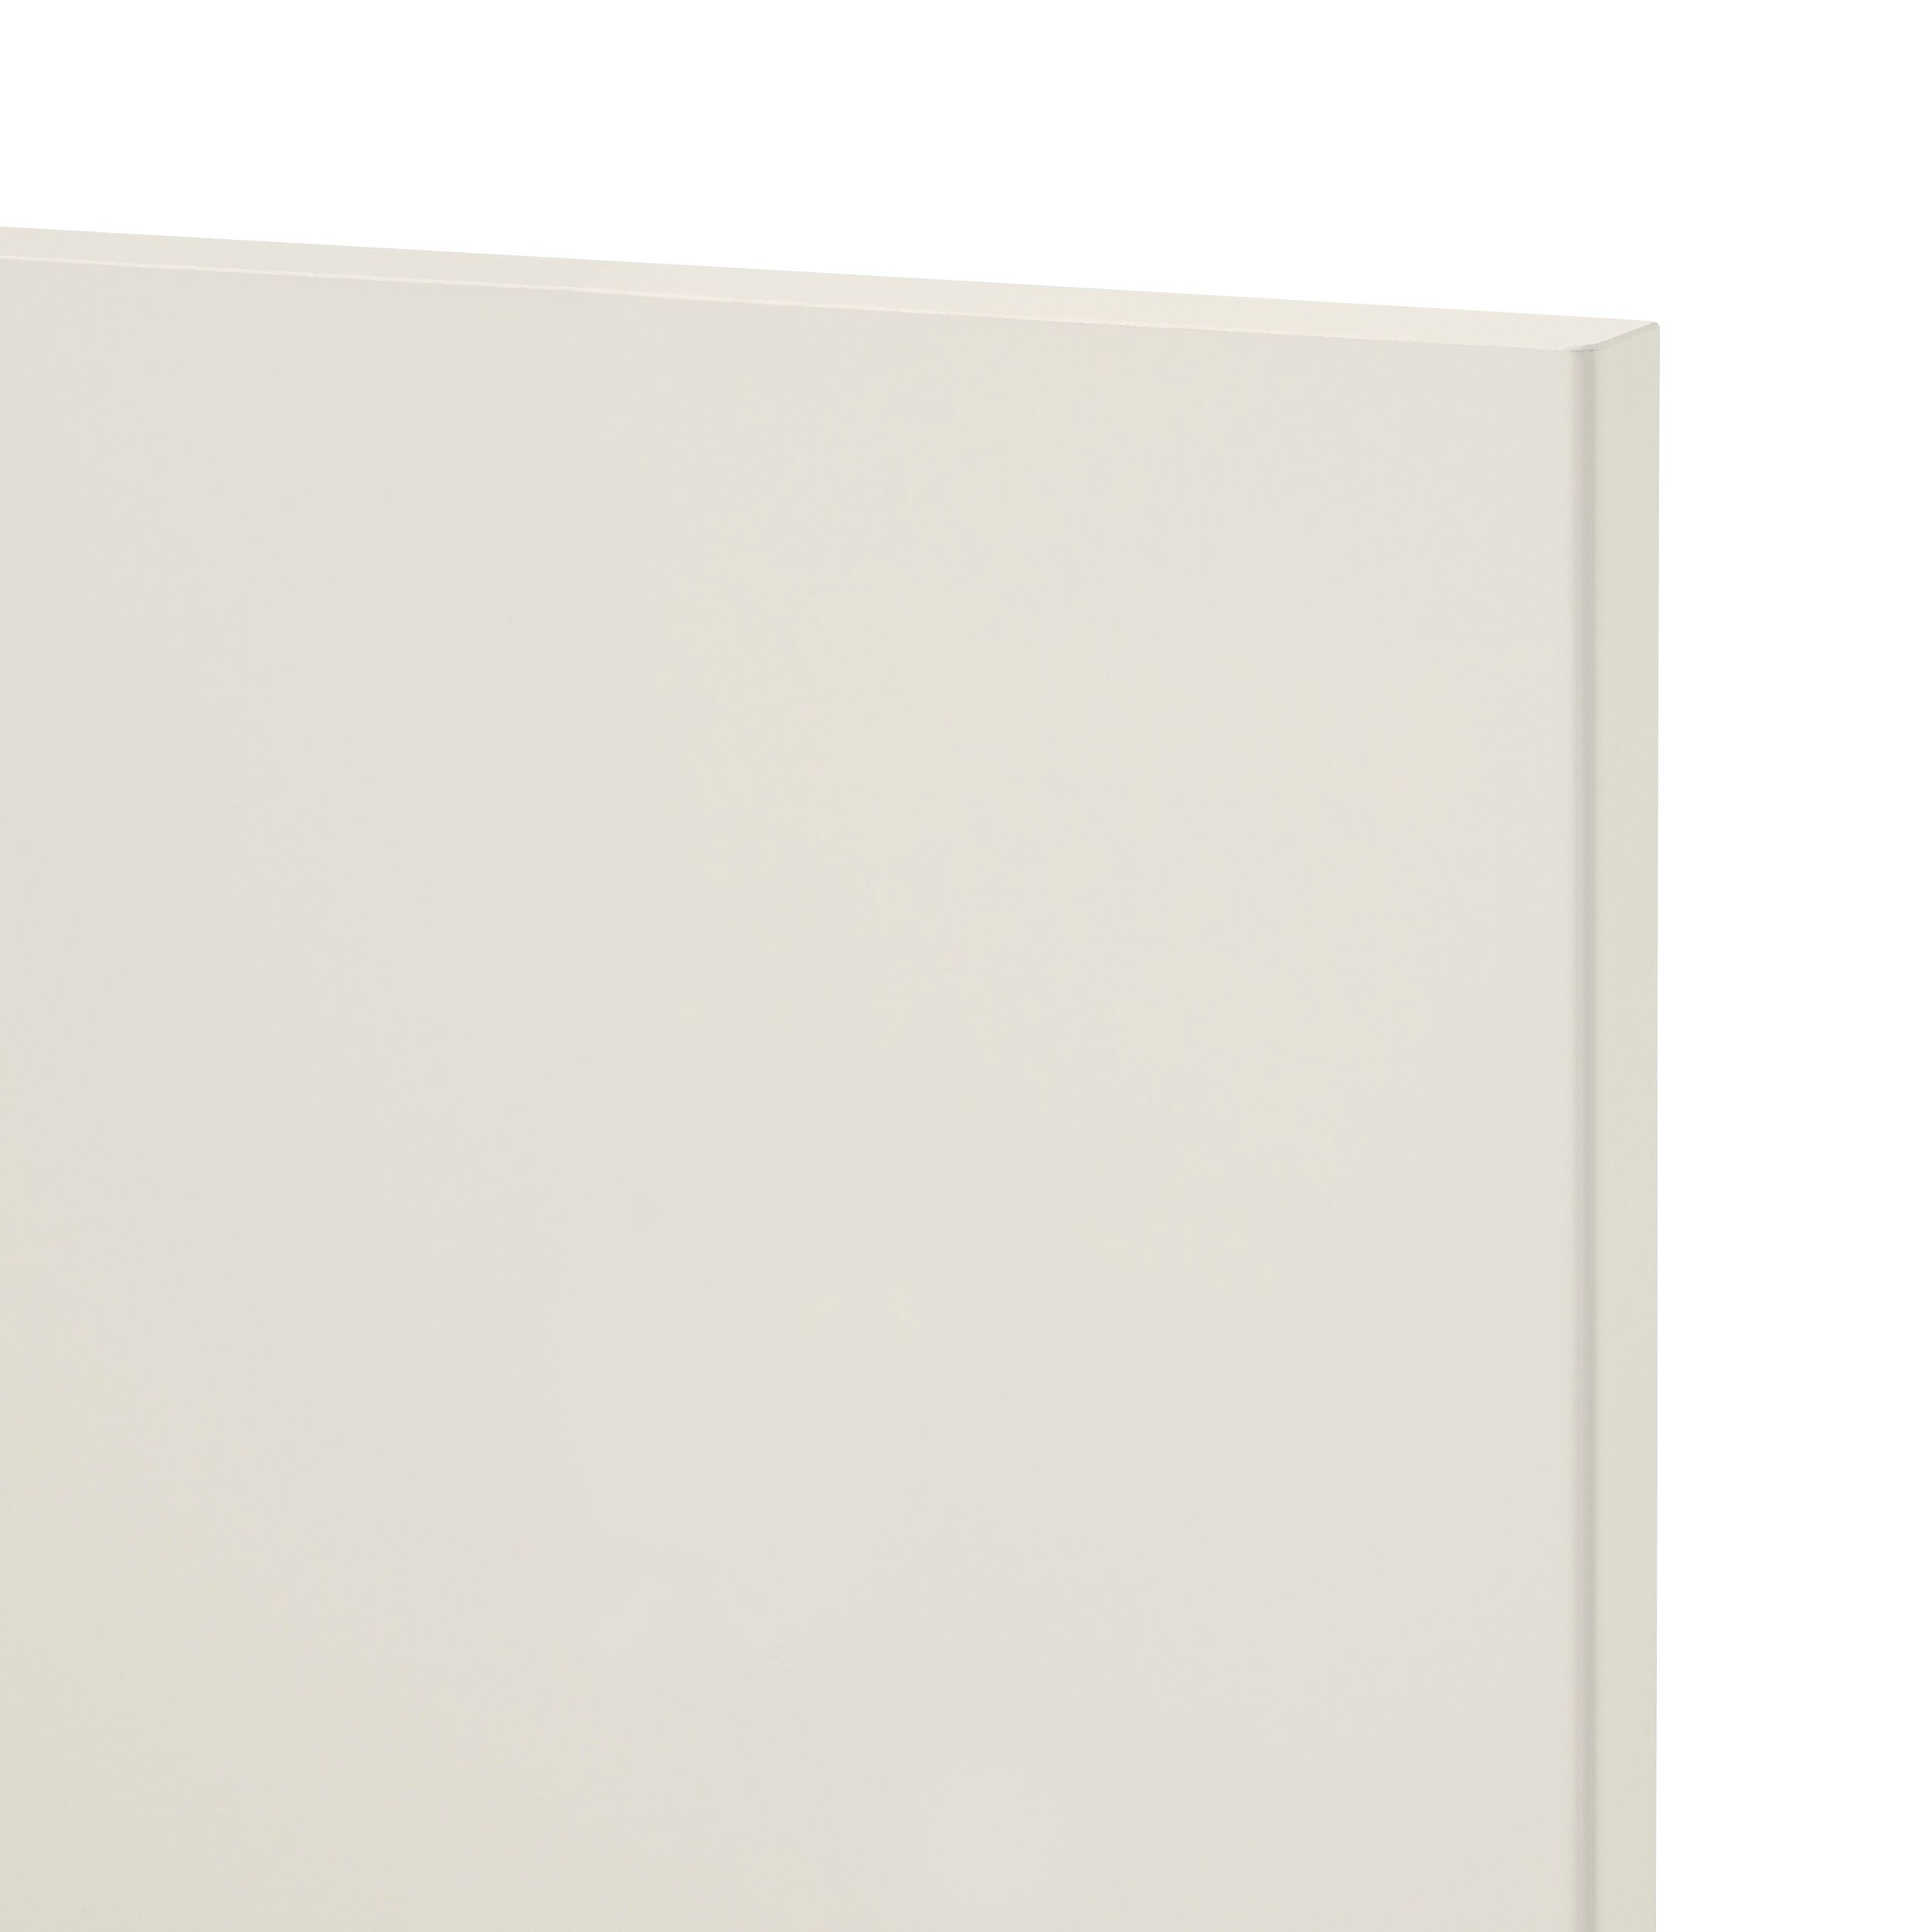 GoodHome Stevia Gloss cream slab Tall wall Cabinet door (W)250mm (H)895mm (T)18mm